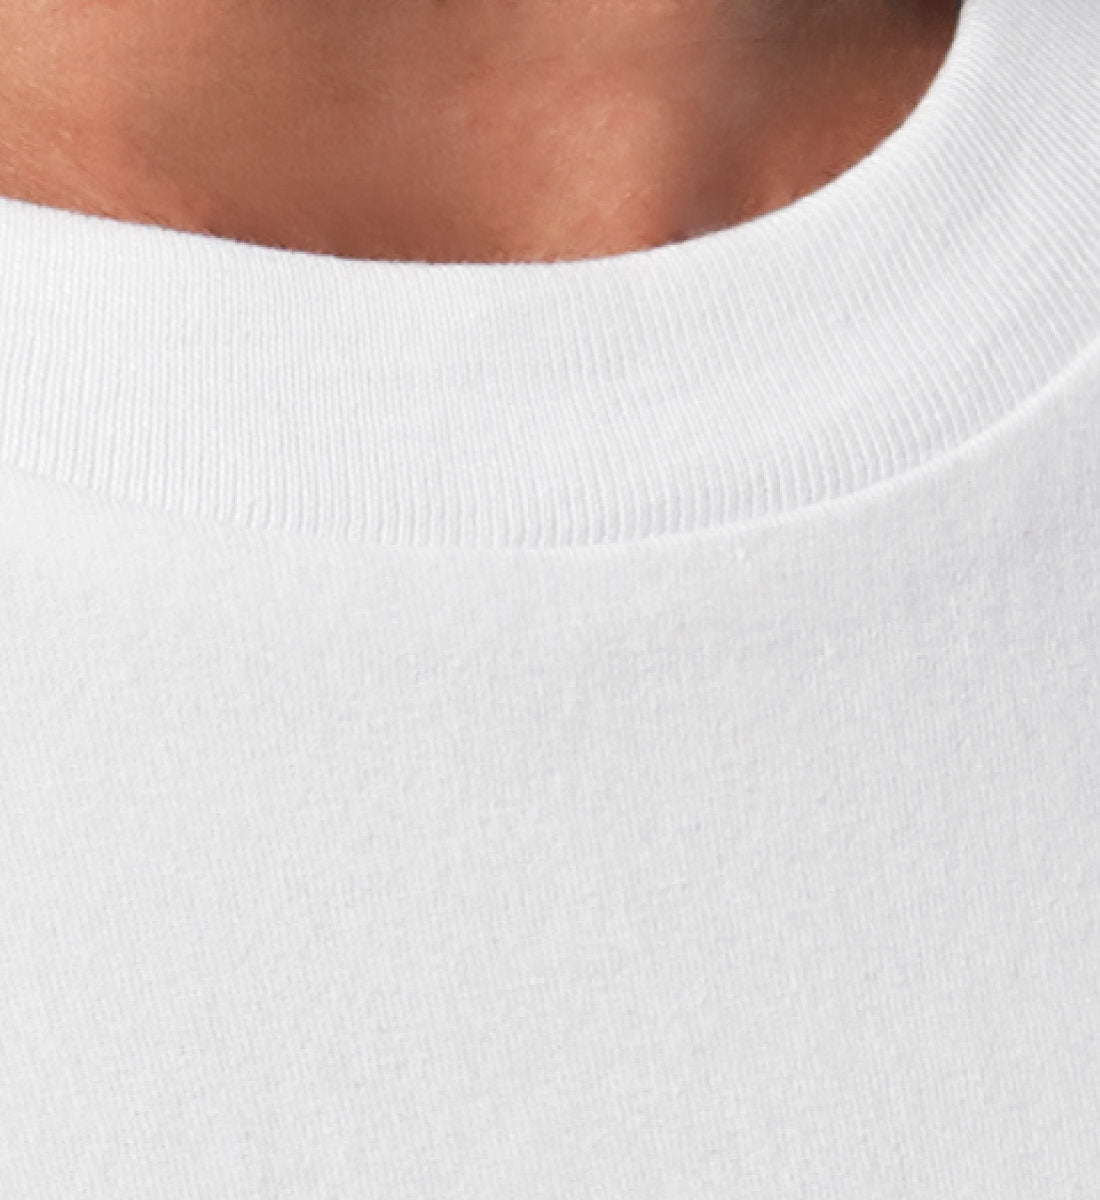 Weißes T-Shirt Unisex für Damen und Herren Relaxed Fit bedruckt mit Design der Kollektion Creative Director of my Life und dem Logo Schriftzug von Roger Rockawoo Clothing